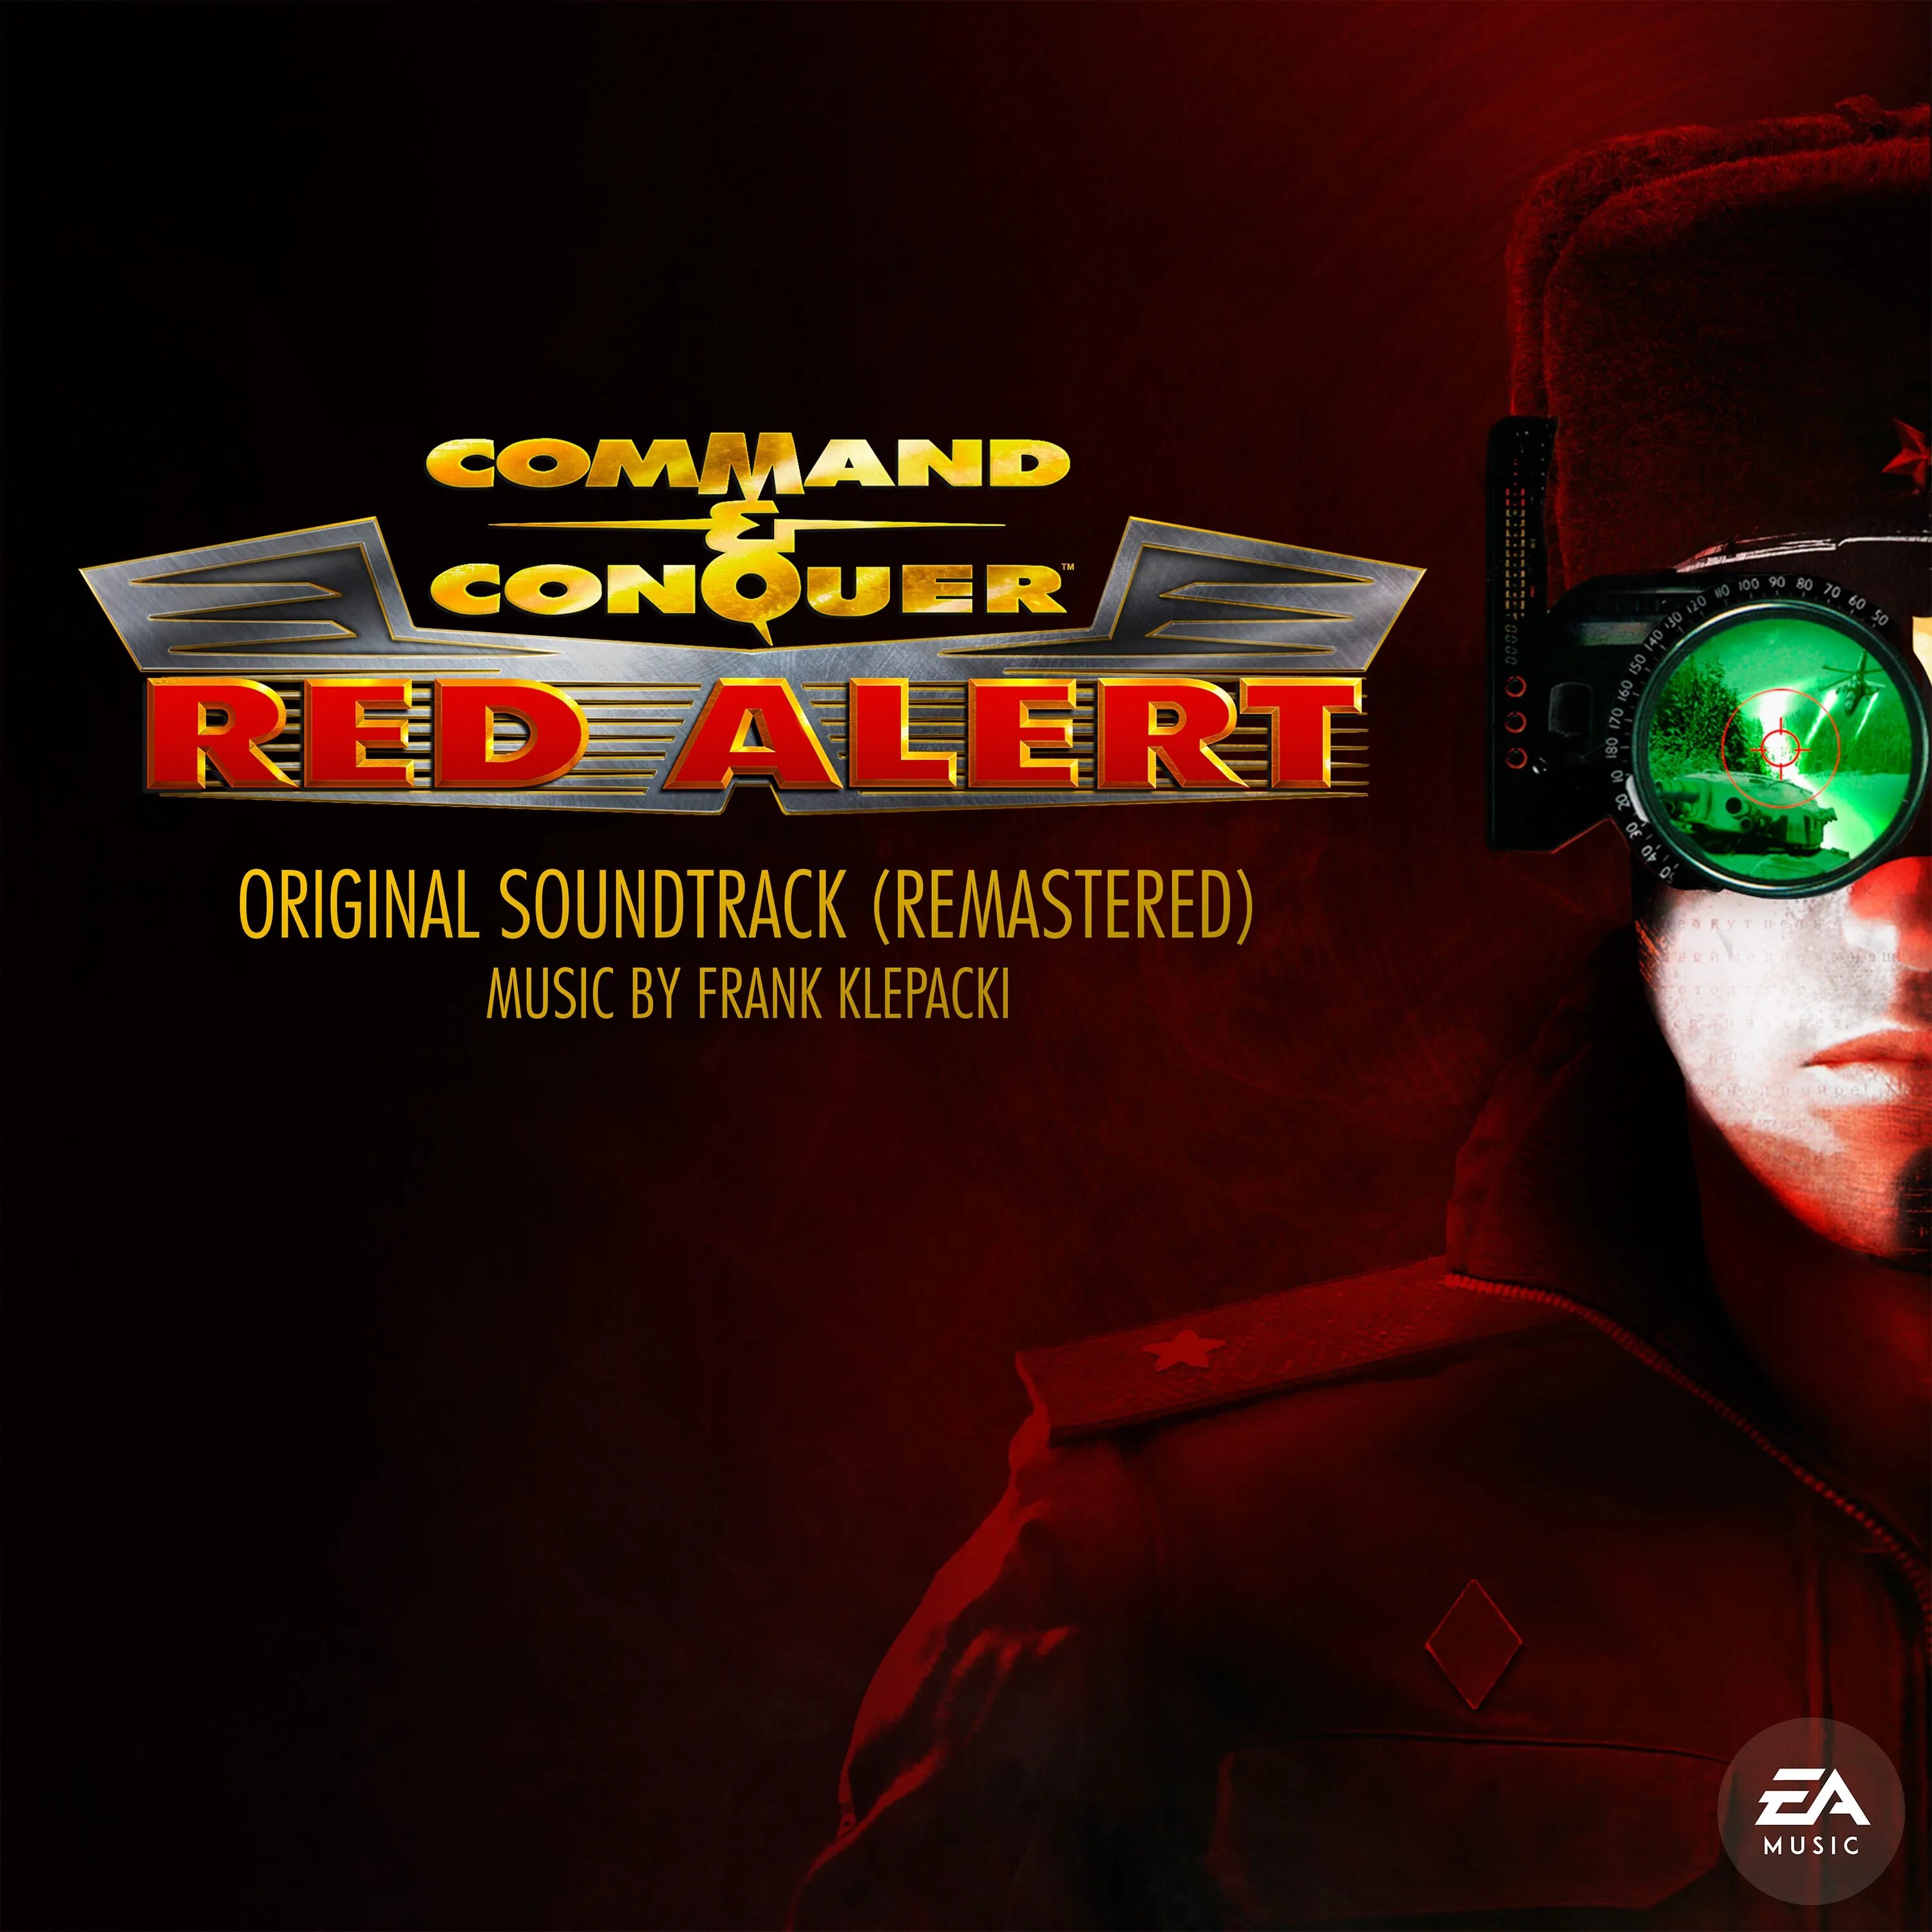 Включи саундтрек из игры. Франк Клепацкий. Command & Conquer Фрэнк Клепаки. Command and Conquer Remastered. Red Alert Soundtrack Фрэнк Клепаки.